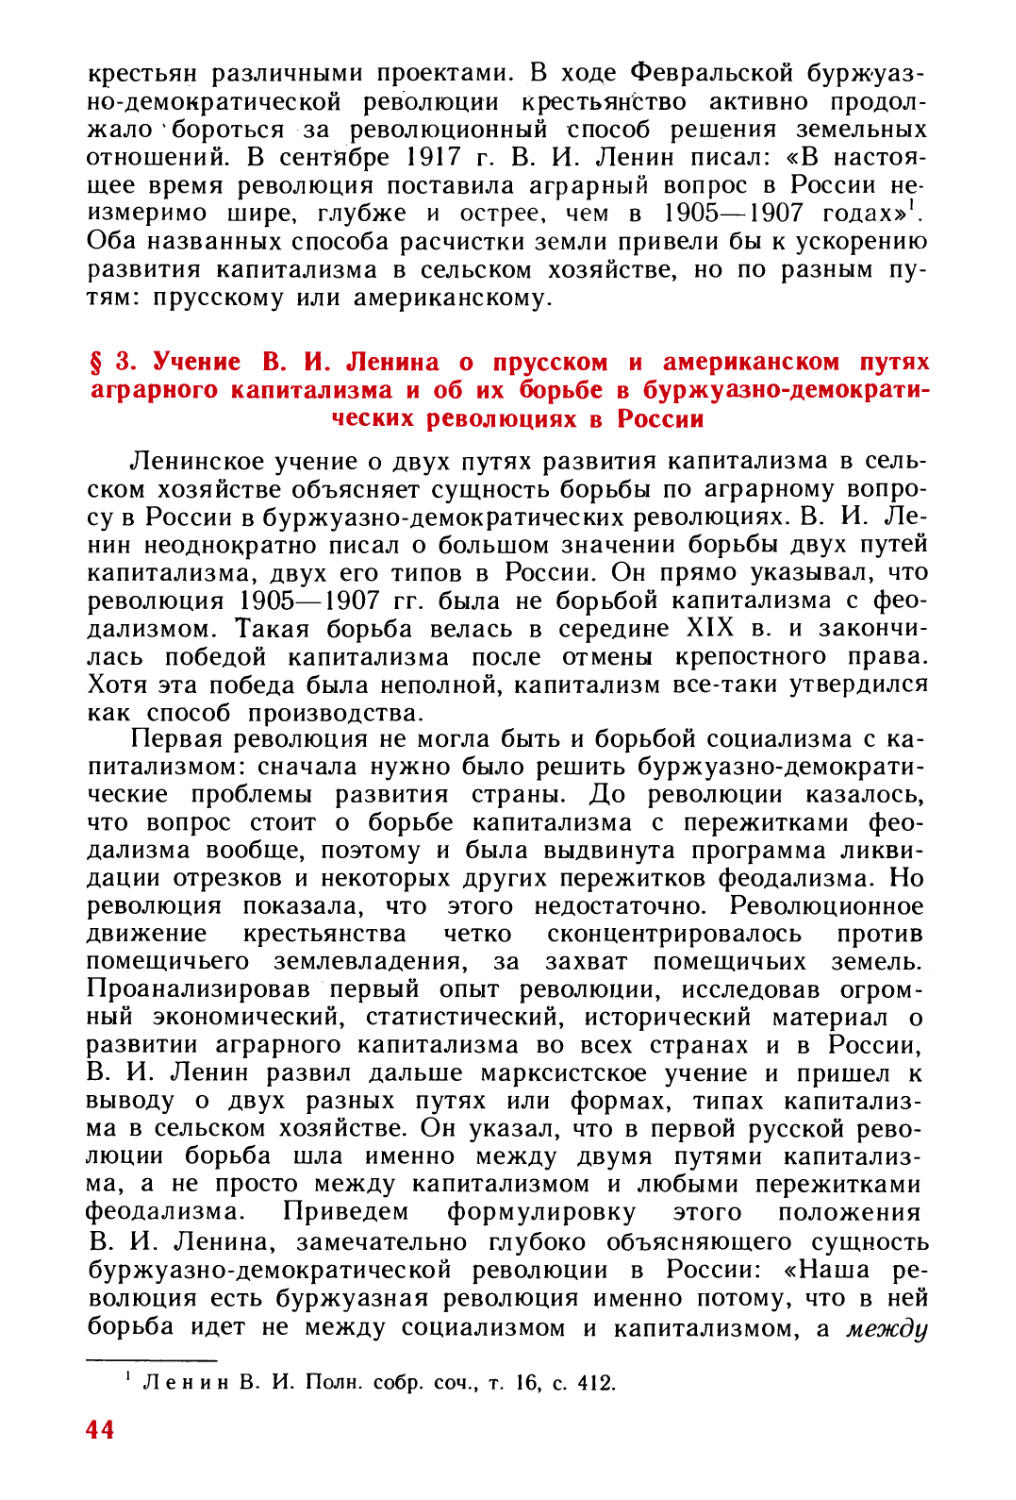 § 3. Учение В. И. Ленина о прусском и американском путях аграрного капитализма и об их борьбе в буржуазно-демократических революциях в России